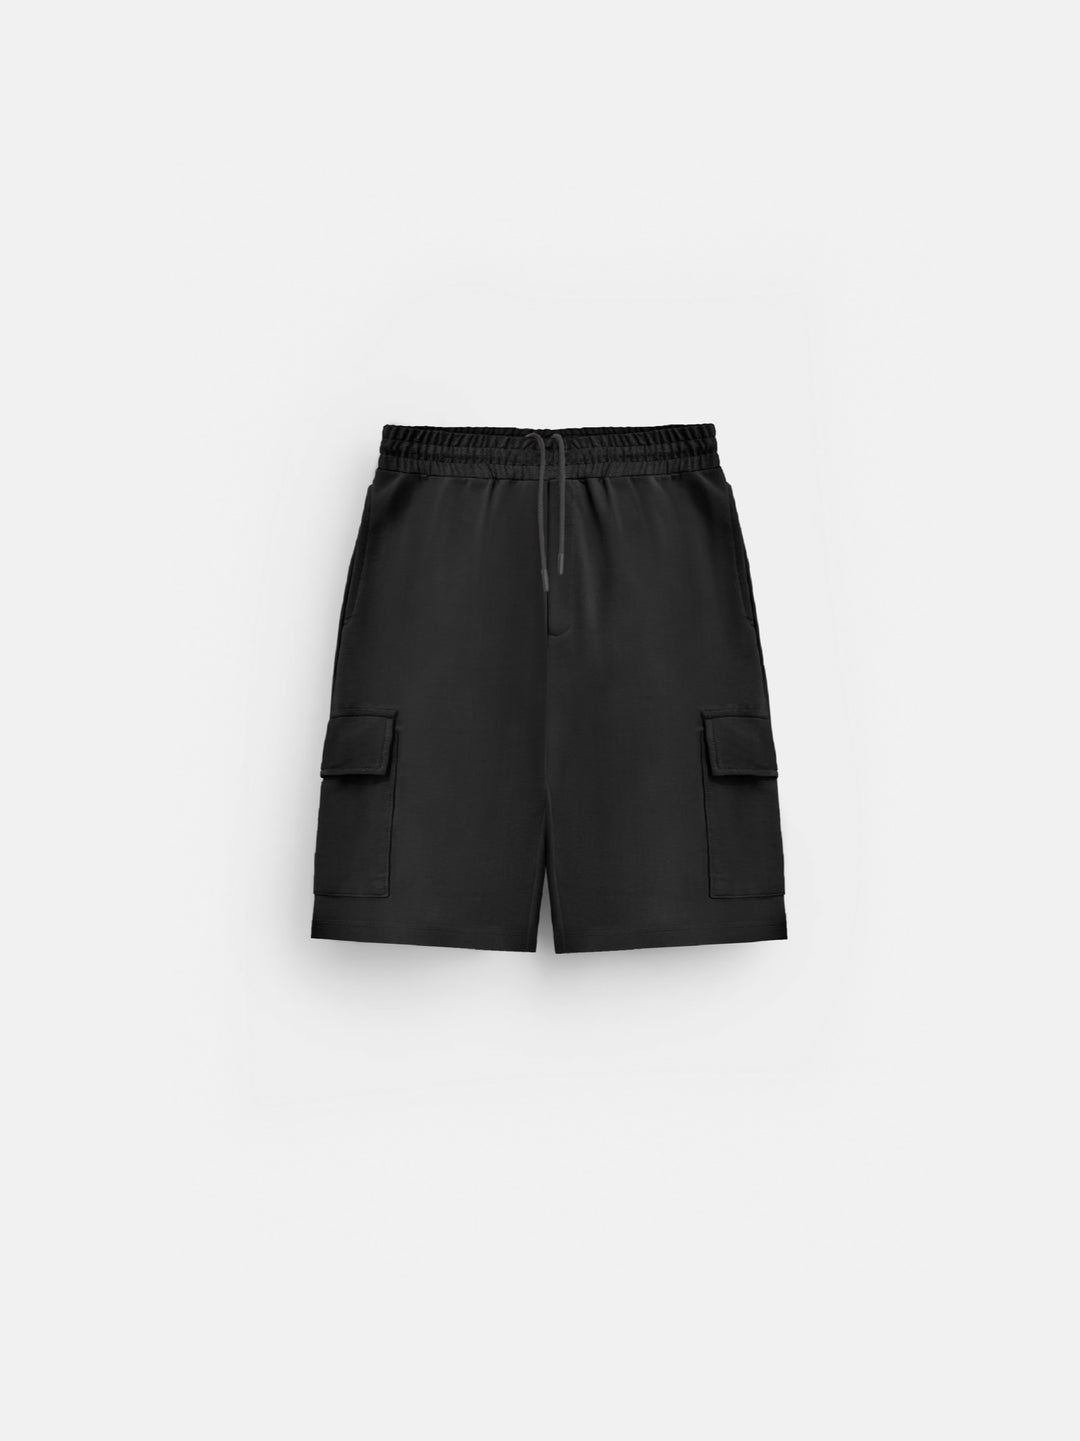 Loose Fit Pocket Shorts - Black